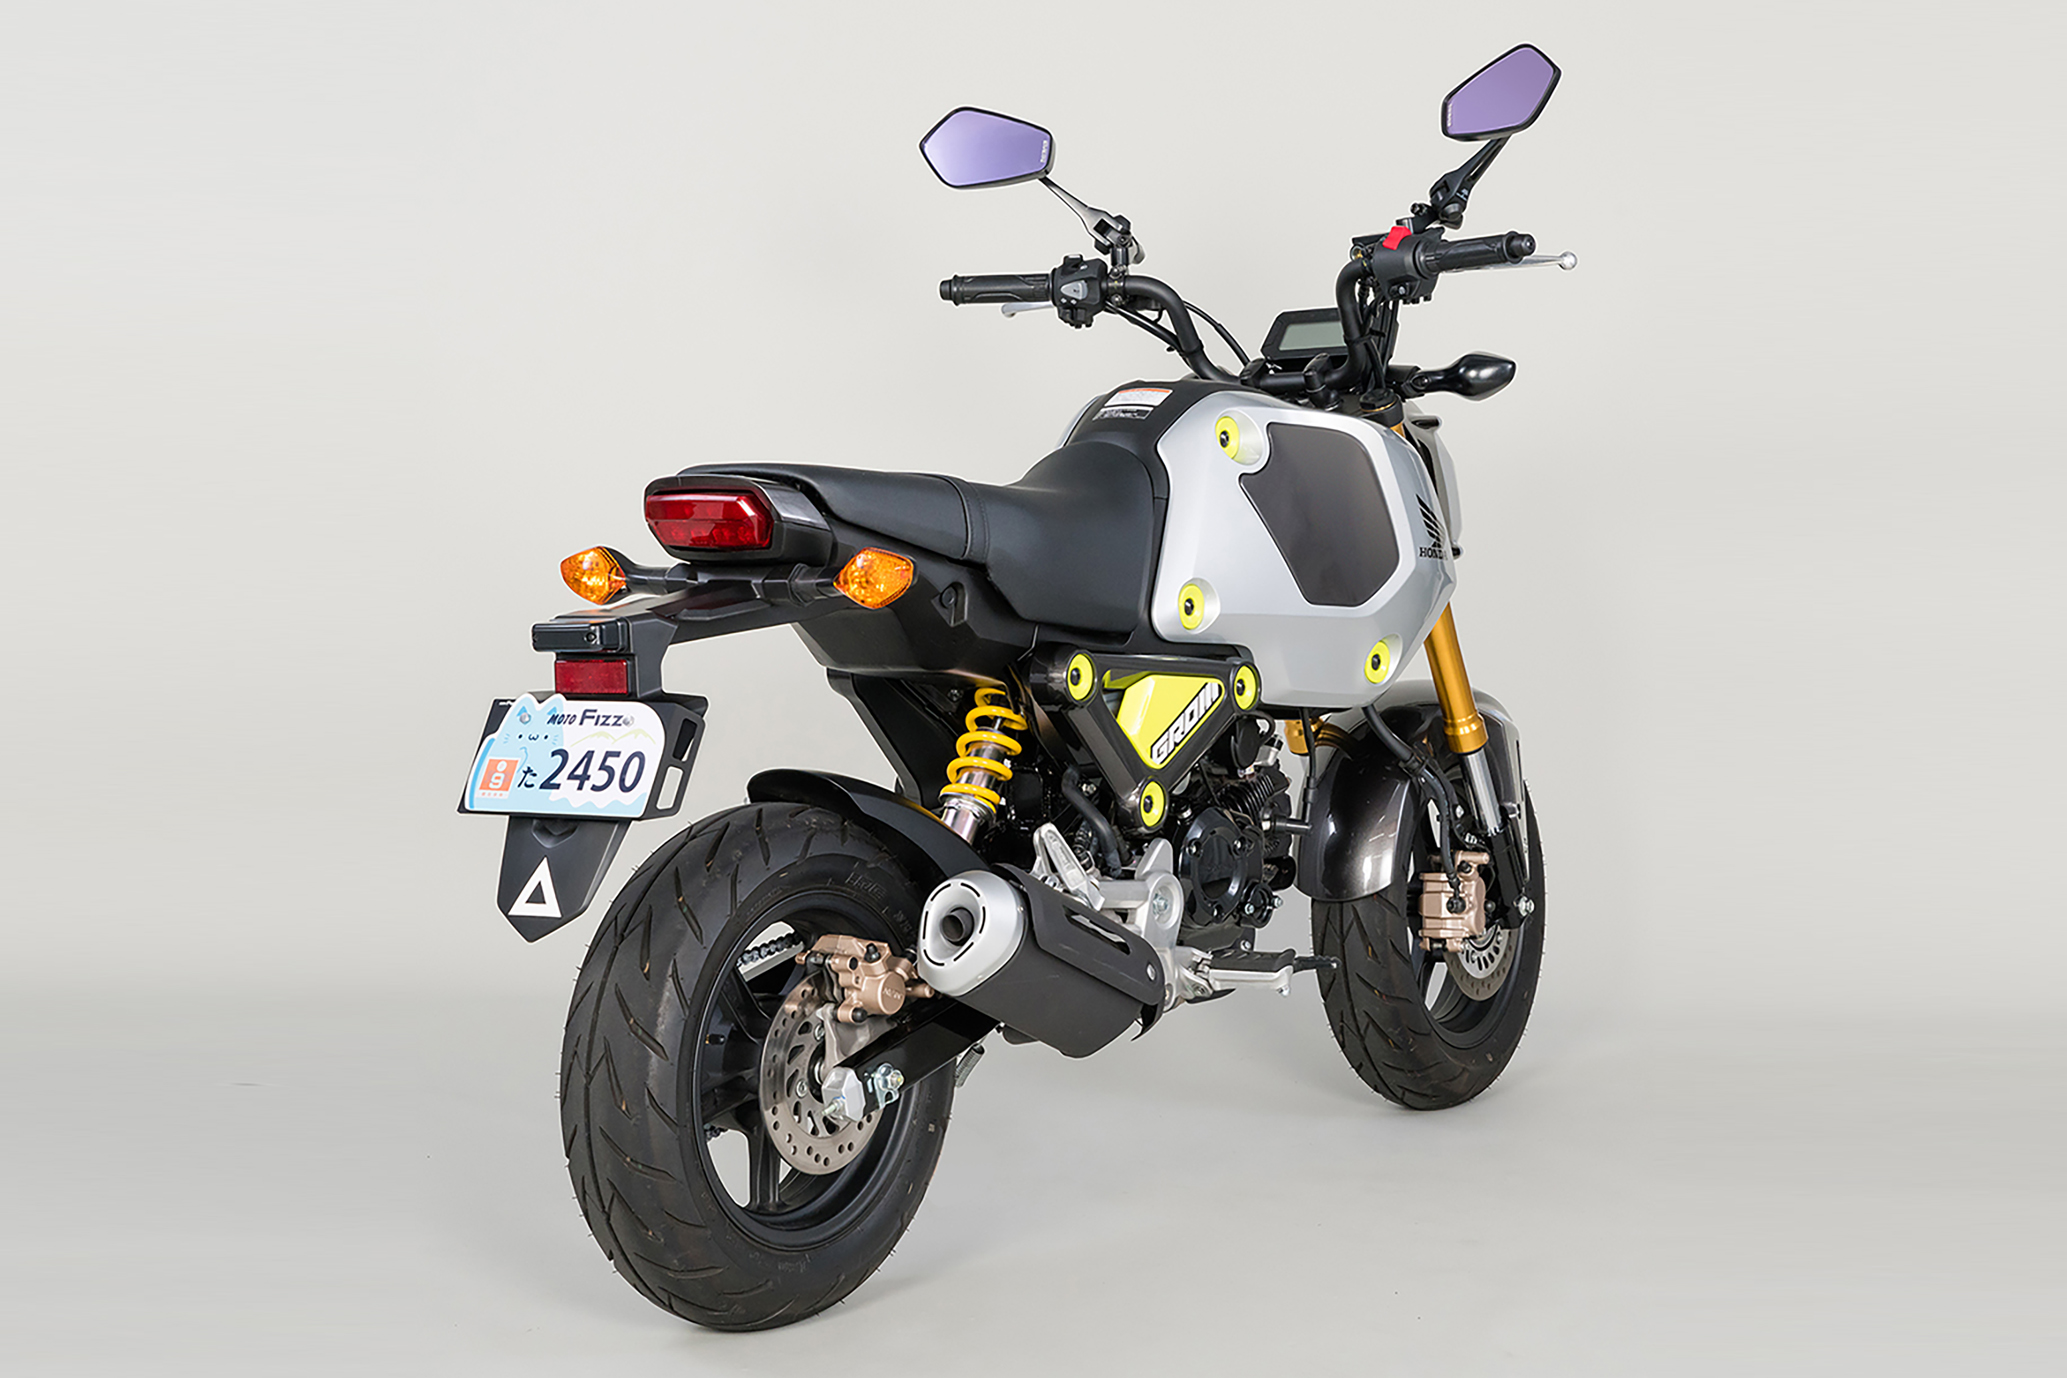 タナックス TANAX バイク用荷掛けフック MOTOFIZZ モトフィズ プレートフック4 (アルミレッド) 原付二種専用 (125cc以下)  MF-4742 アクセサリー